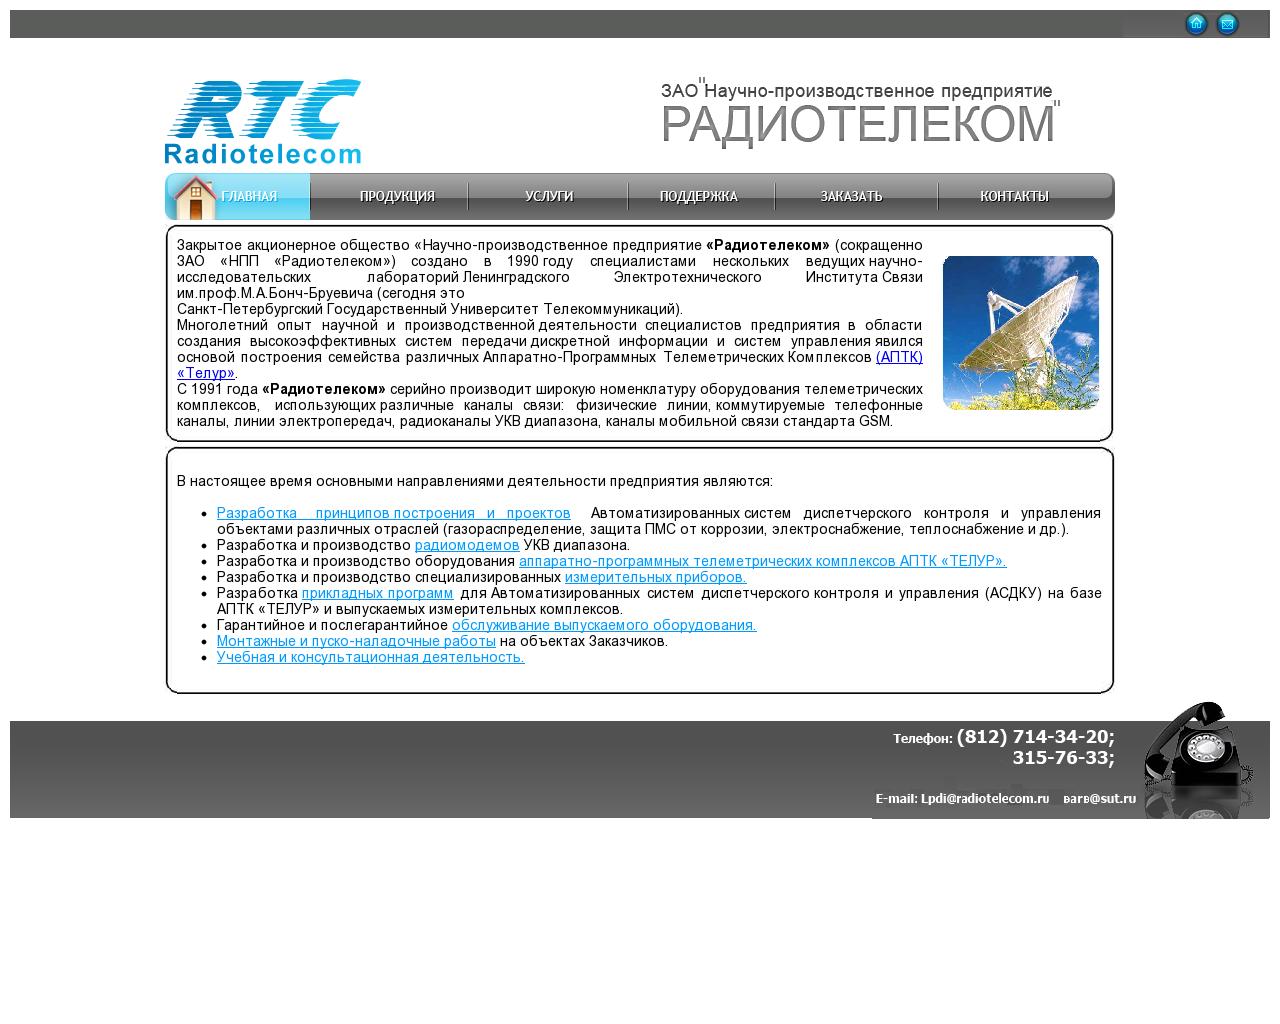 Изображение сайта radiotelecom.ru в разрешении 1280x1024